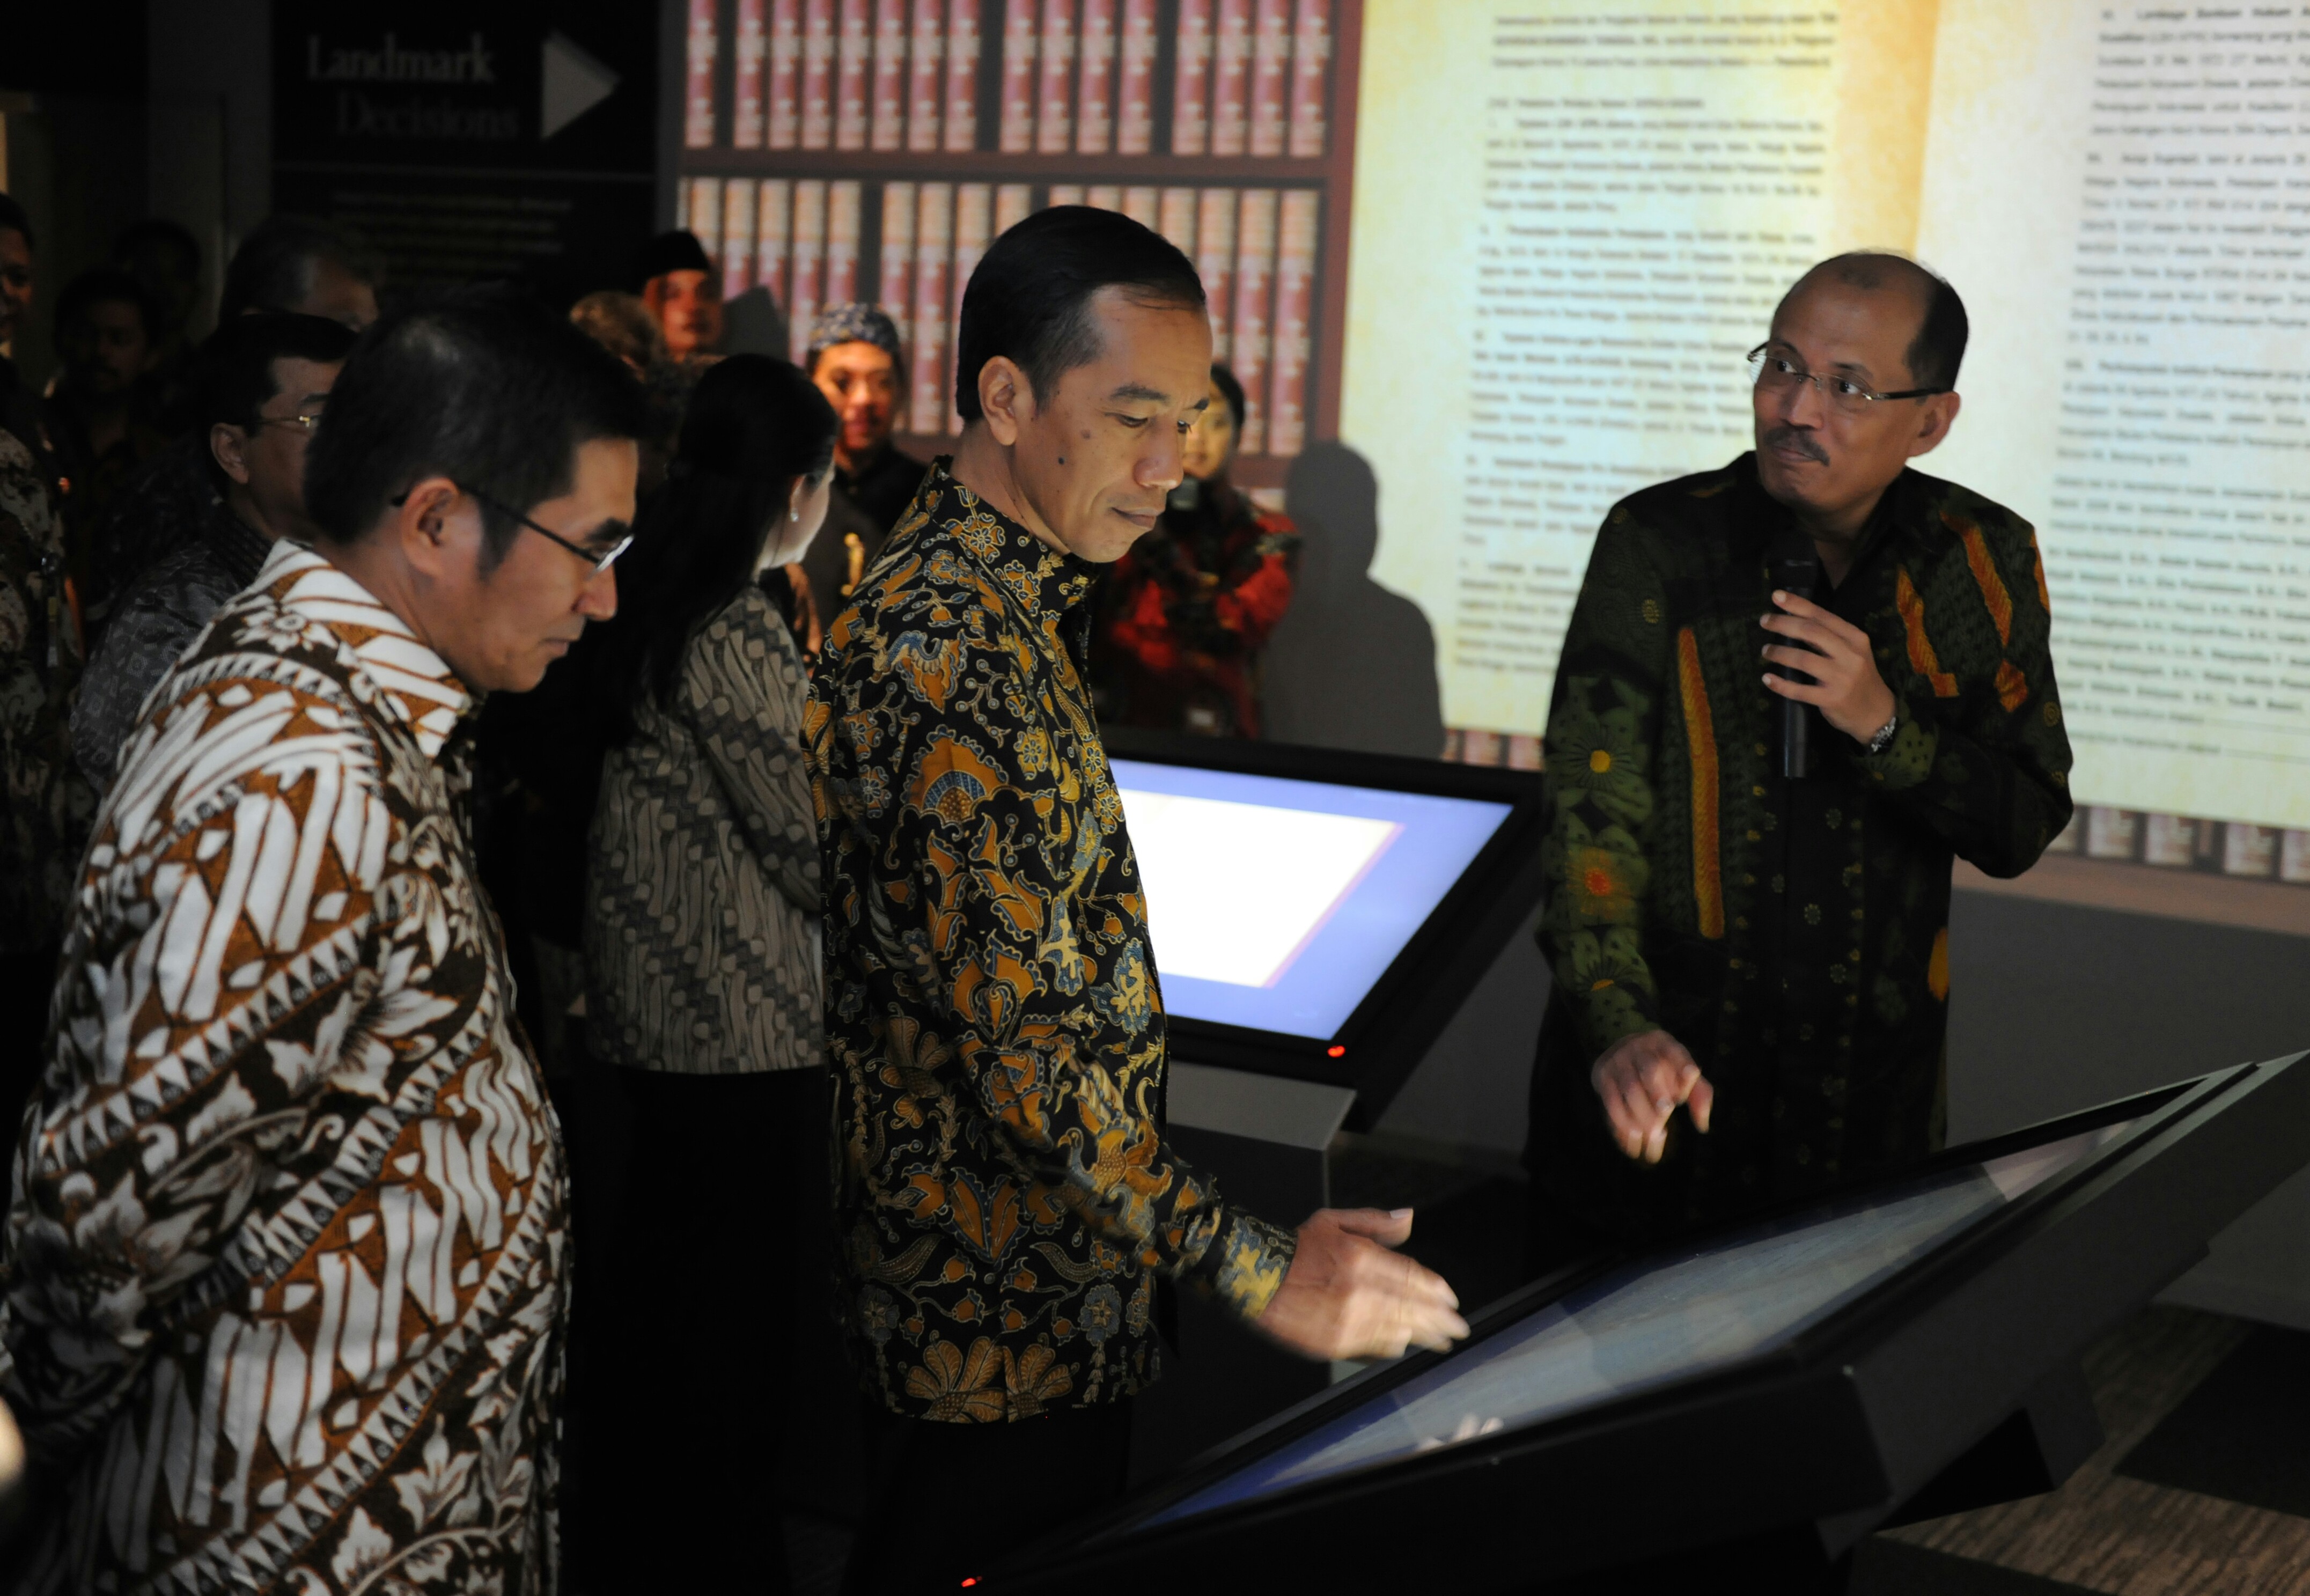 Presiden Jokowi didampingi Ketua MK Hamdan Zoelva meresmikan Pusat Sejarah Konstitusi, di Gedung MK, Jumat (19/12). Foto: www.setkab.go.id